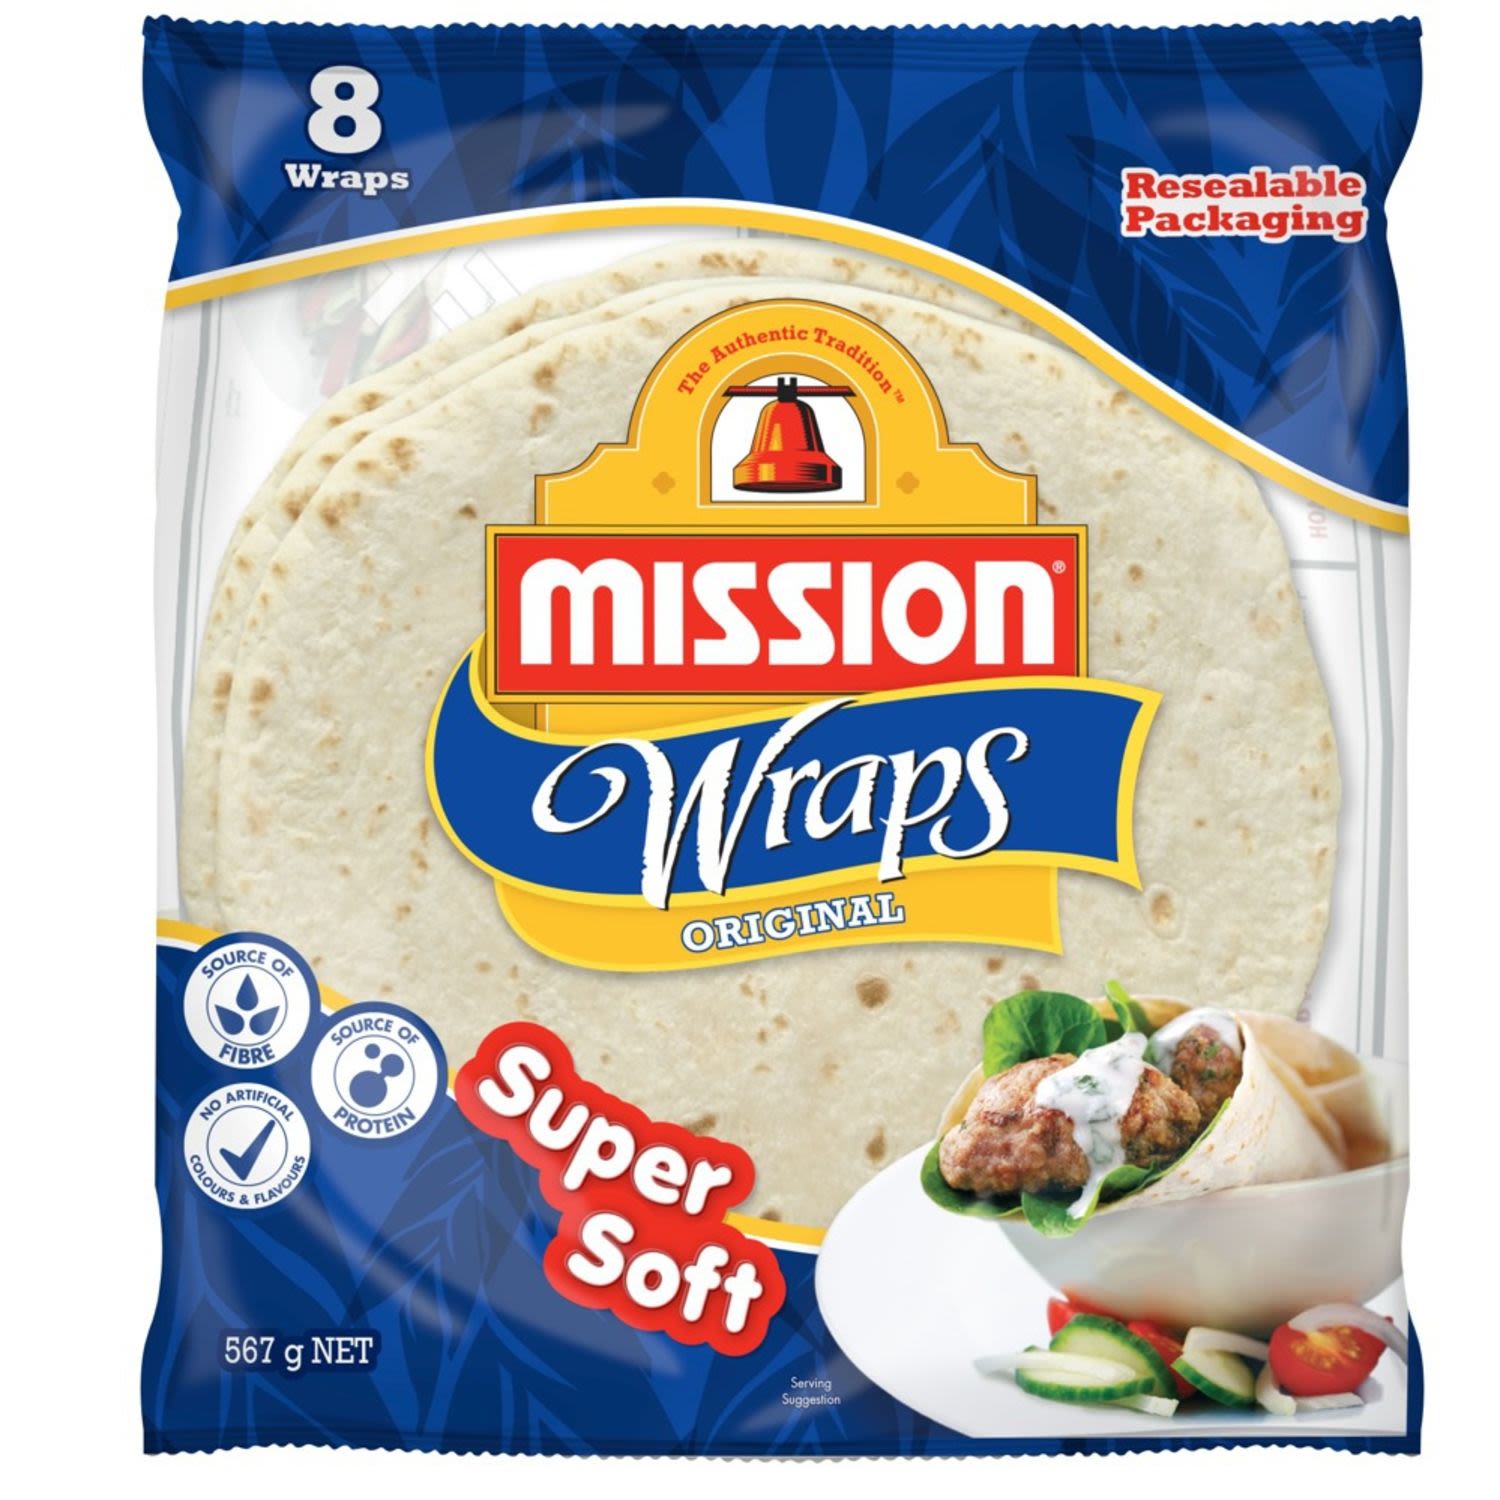 Mission Wraps Original, 8 Each